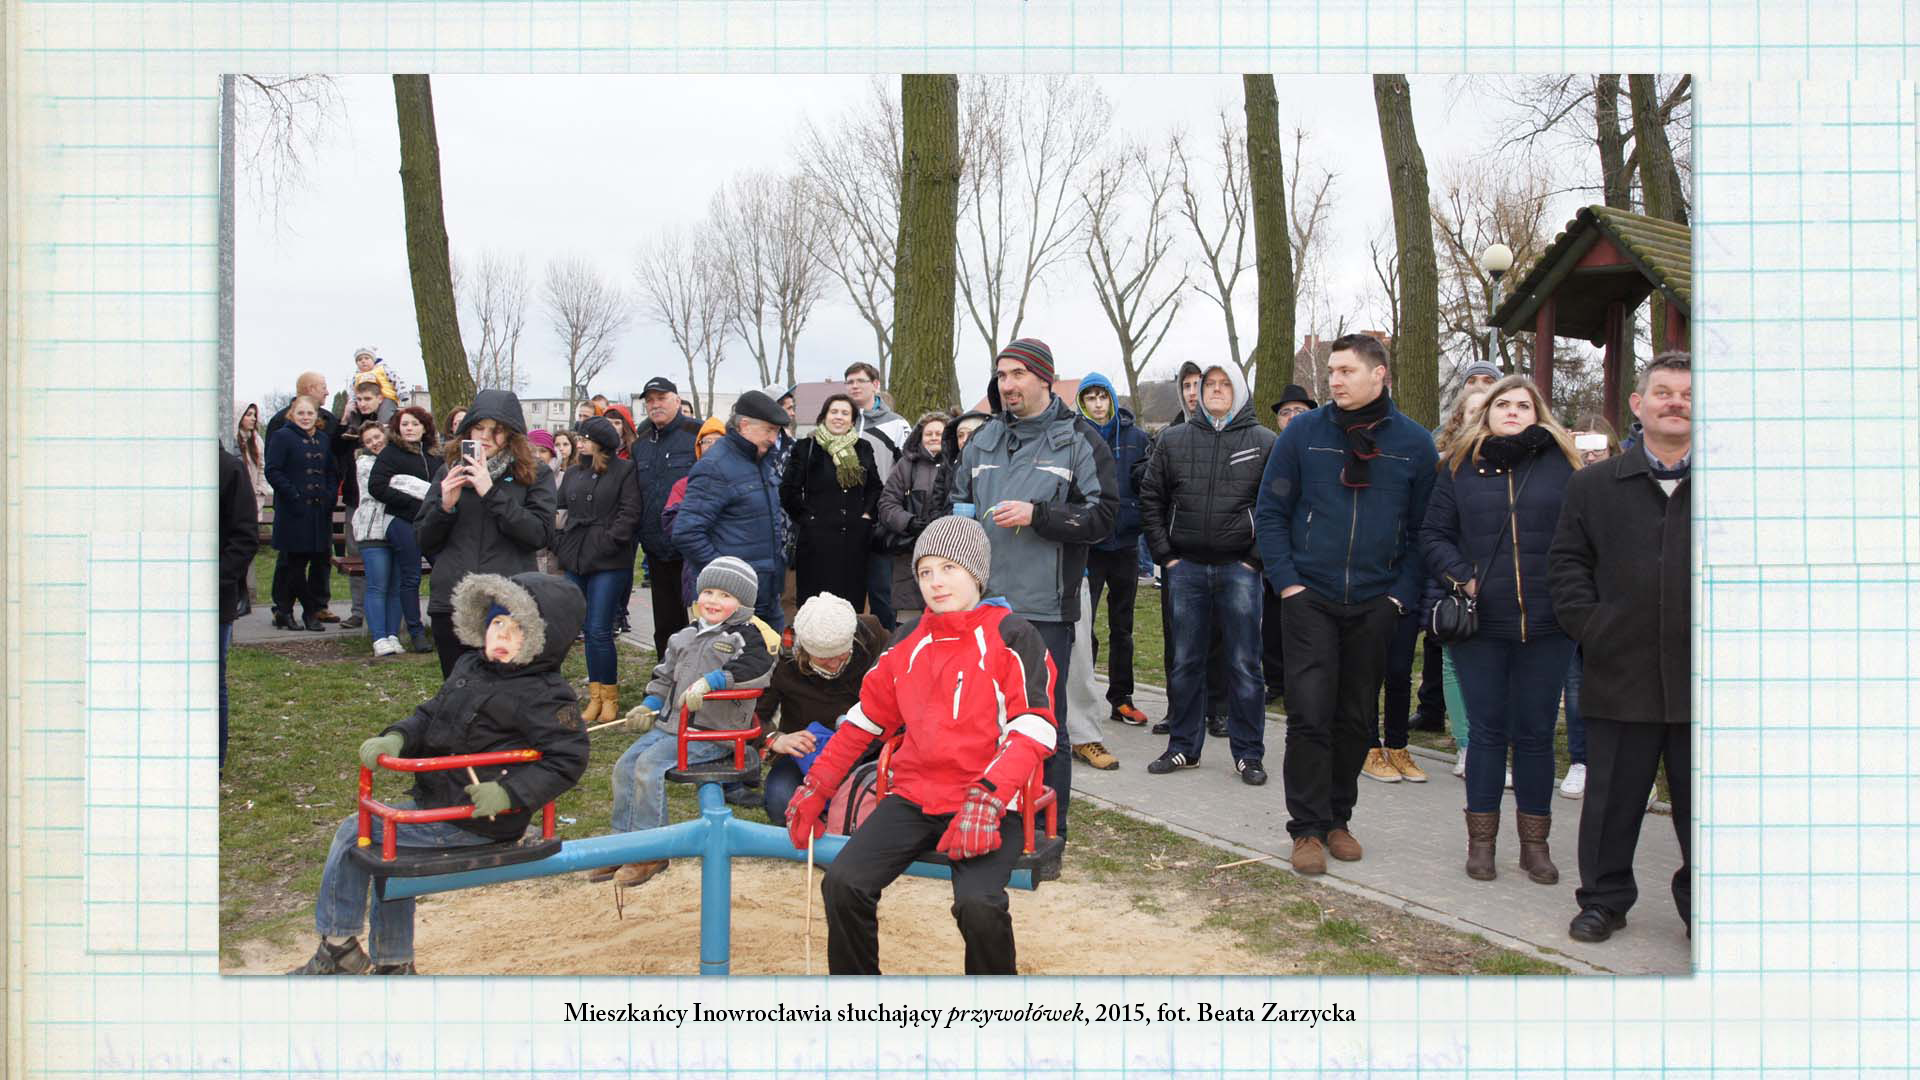 Mieszkańcy Inowrocławia słuchający przywołówek, 2015, fot. Beata Zarzycka Zdjęcie w kolorze. Grupa osób w różnym wieku, zgromadzona w jednym miejscu, intensywnie przygląda się czemuś.